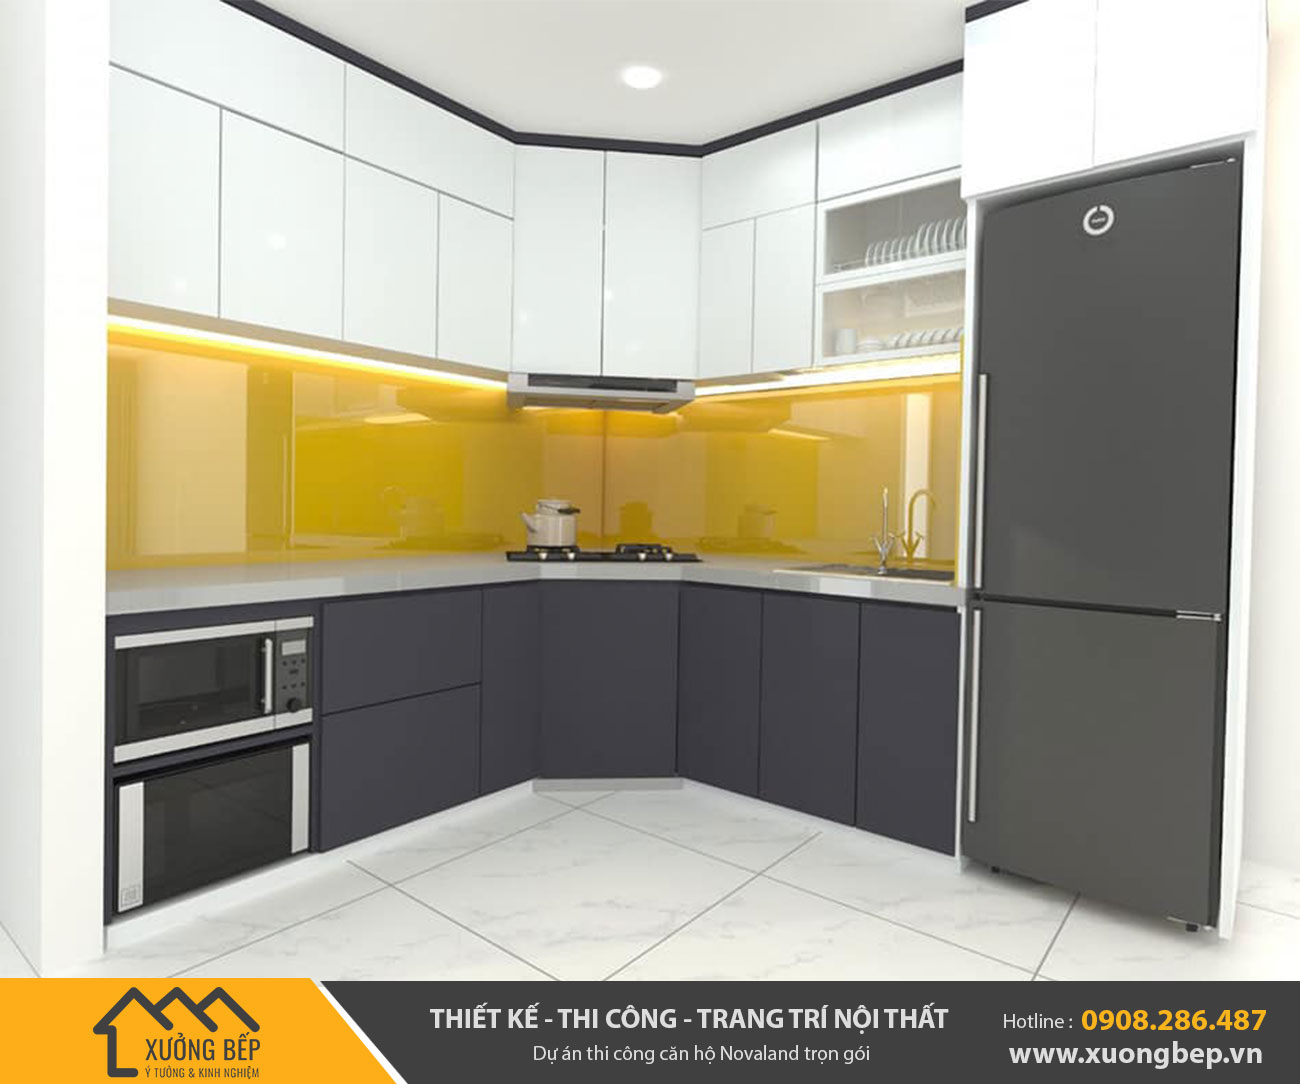 Dự án thiết kế thi công lắp đặp tủ bếp căn hộ nhà chị Hương - TPHCM 2